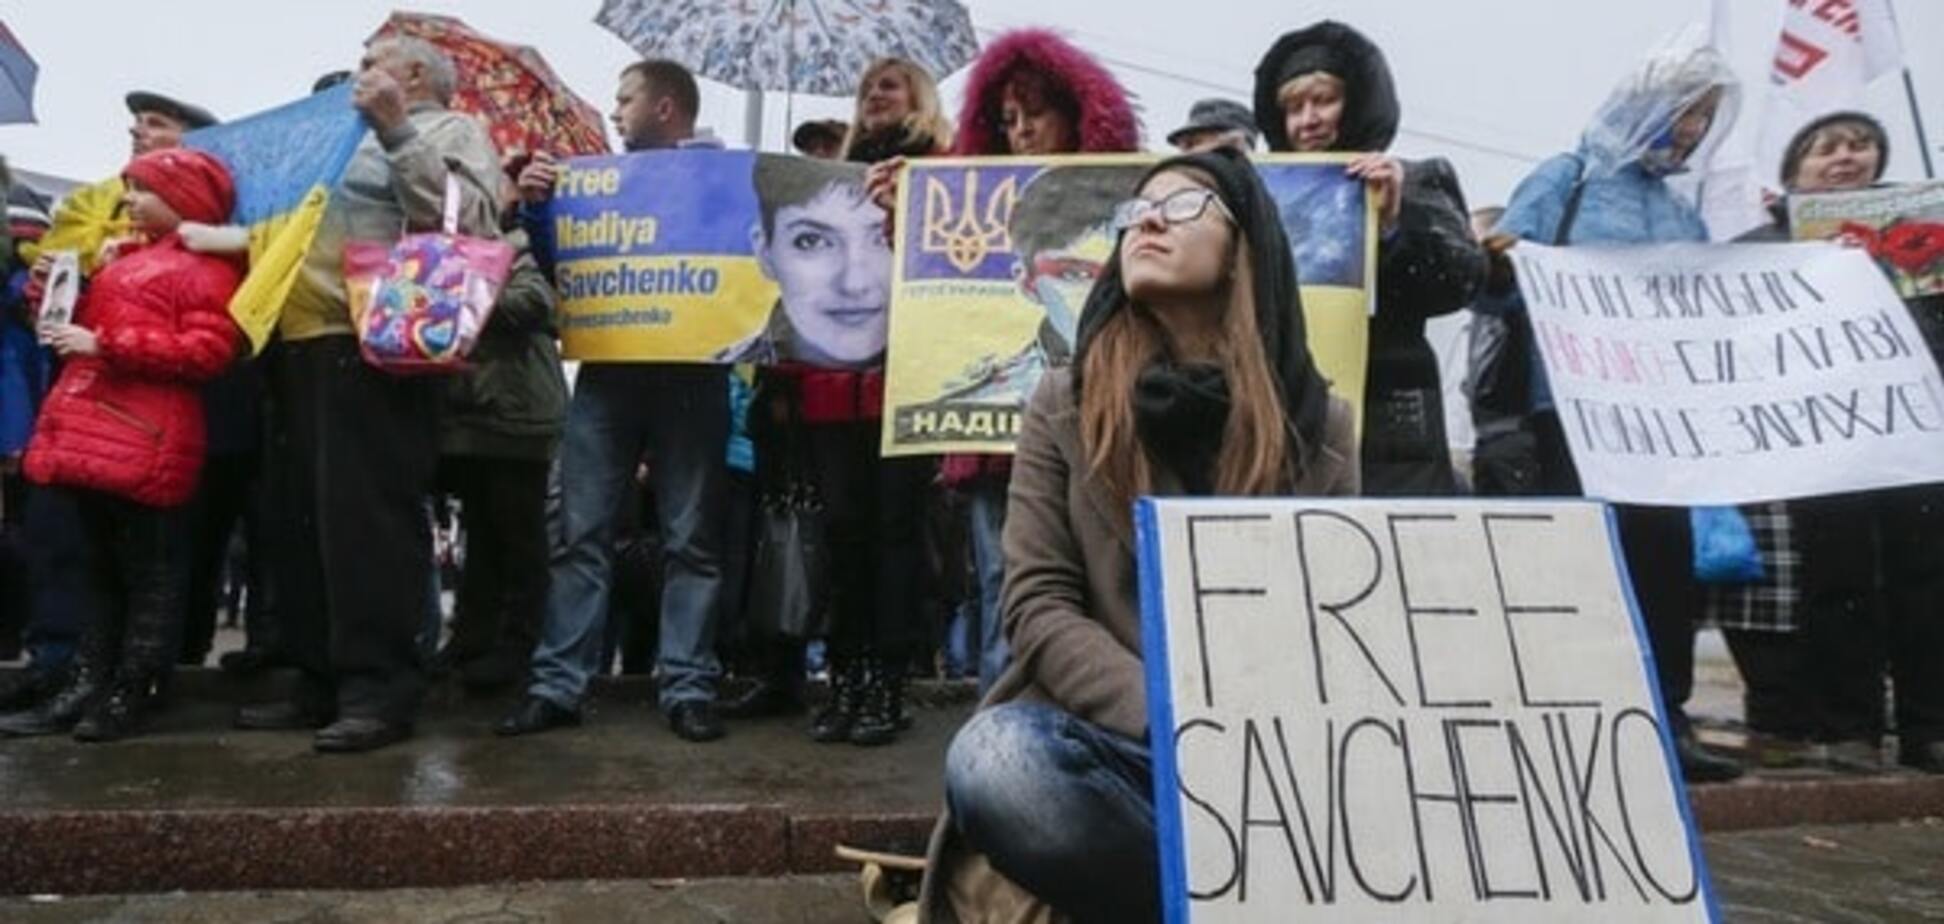 Кремль прийме рішення про долю Савченко протягом двох тижнів - адвокат